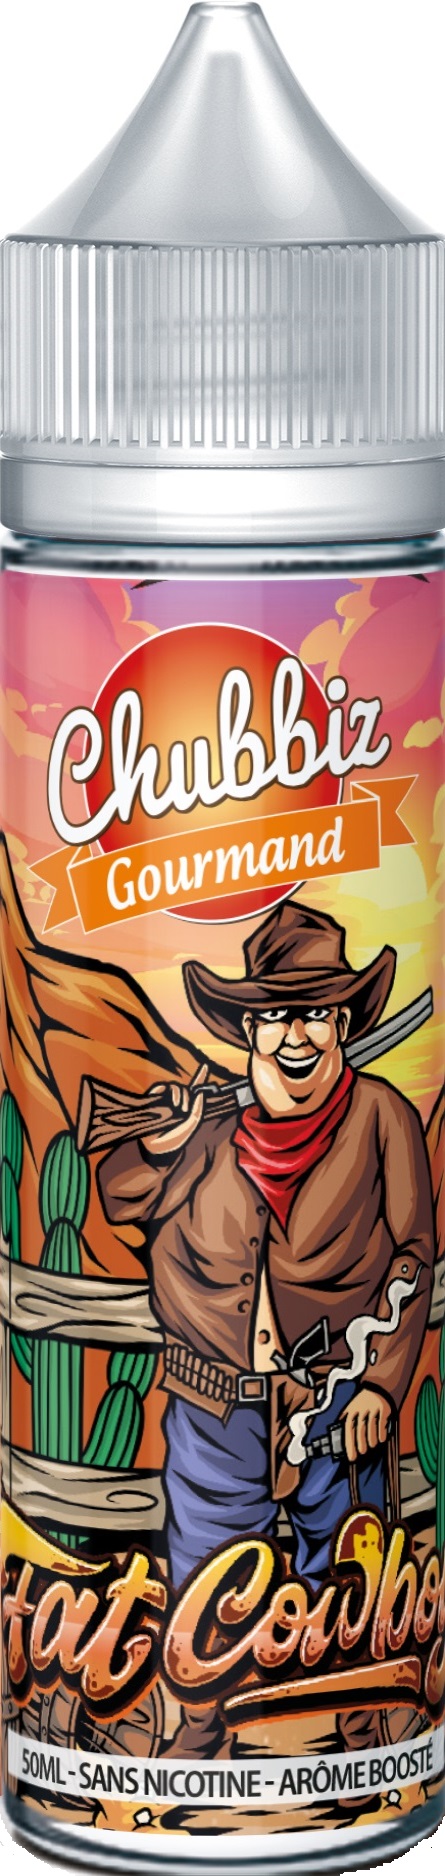 Fat-cowboy-Chubbiz-50ml